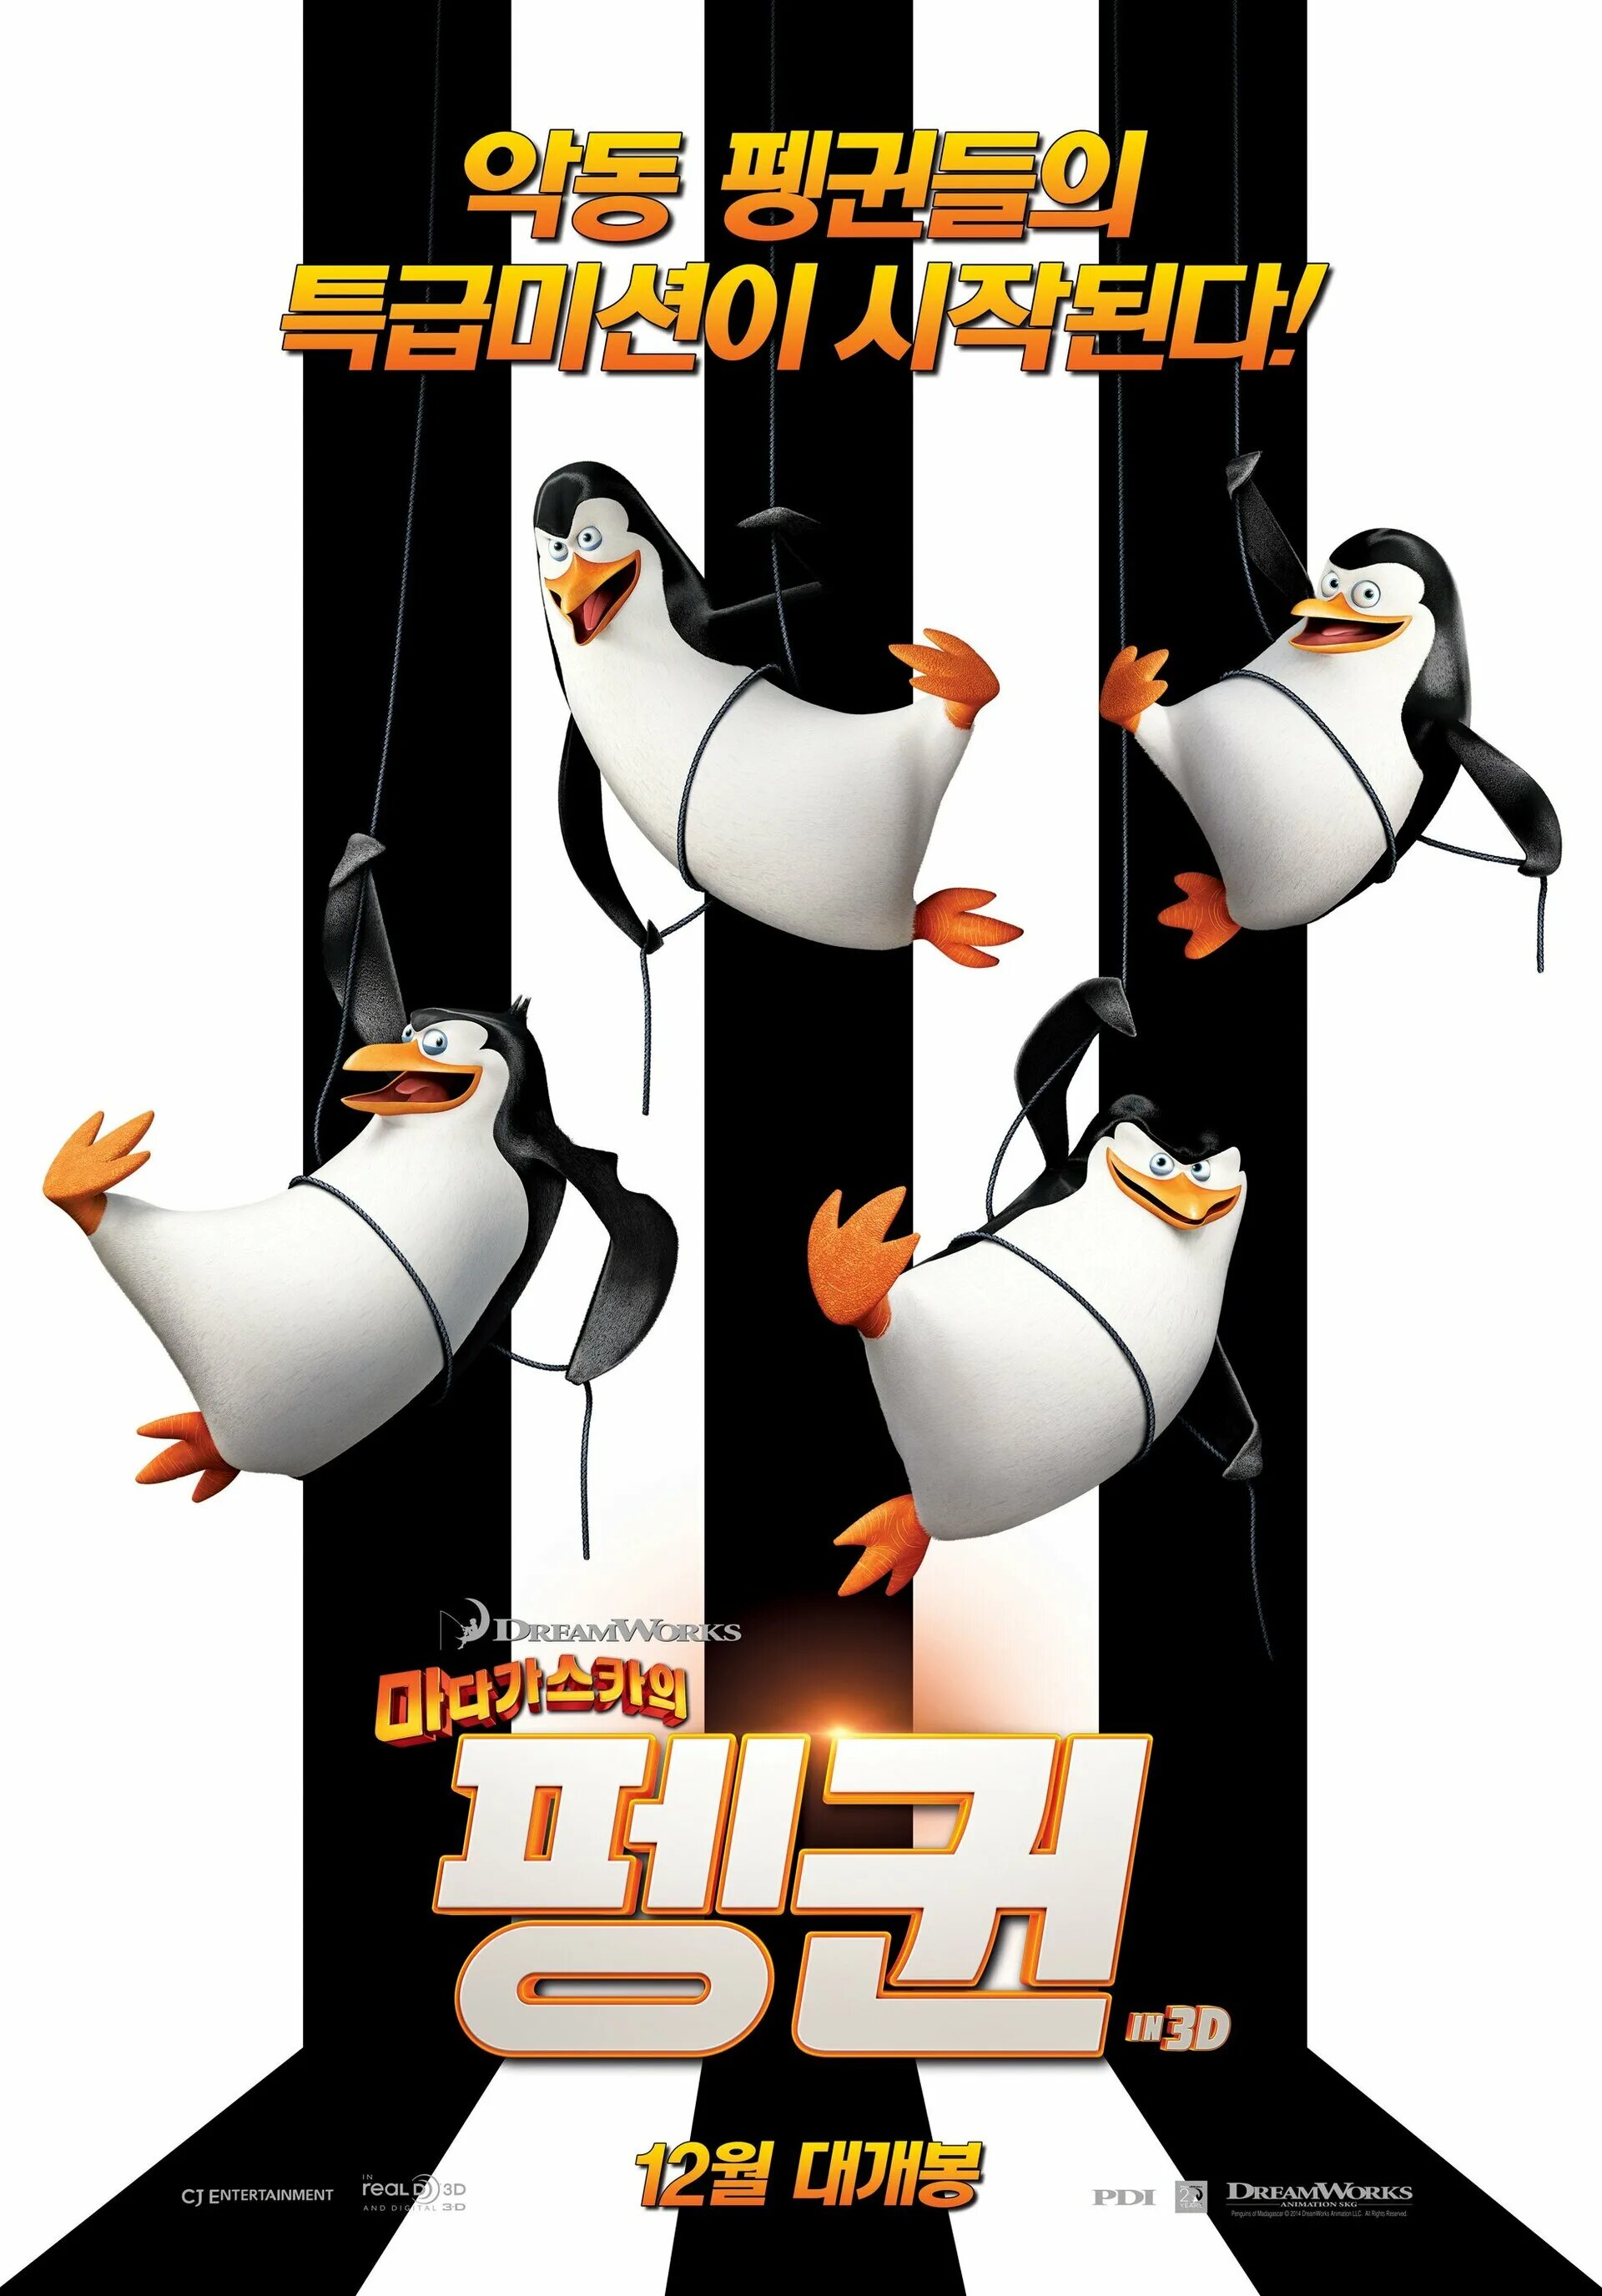 Афиша три пингвина мадагаскар. Пингвины из Мадагаскара. Пингвины Мадагаскара 2014. Penguins of Madagascar (2014) poster. Пингвины из Мадагаскара Постер.